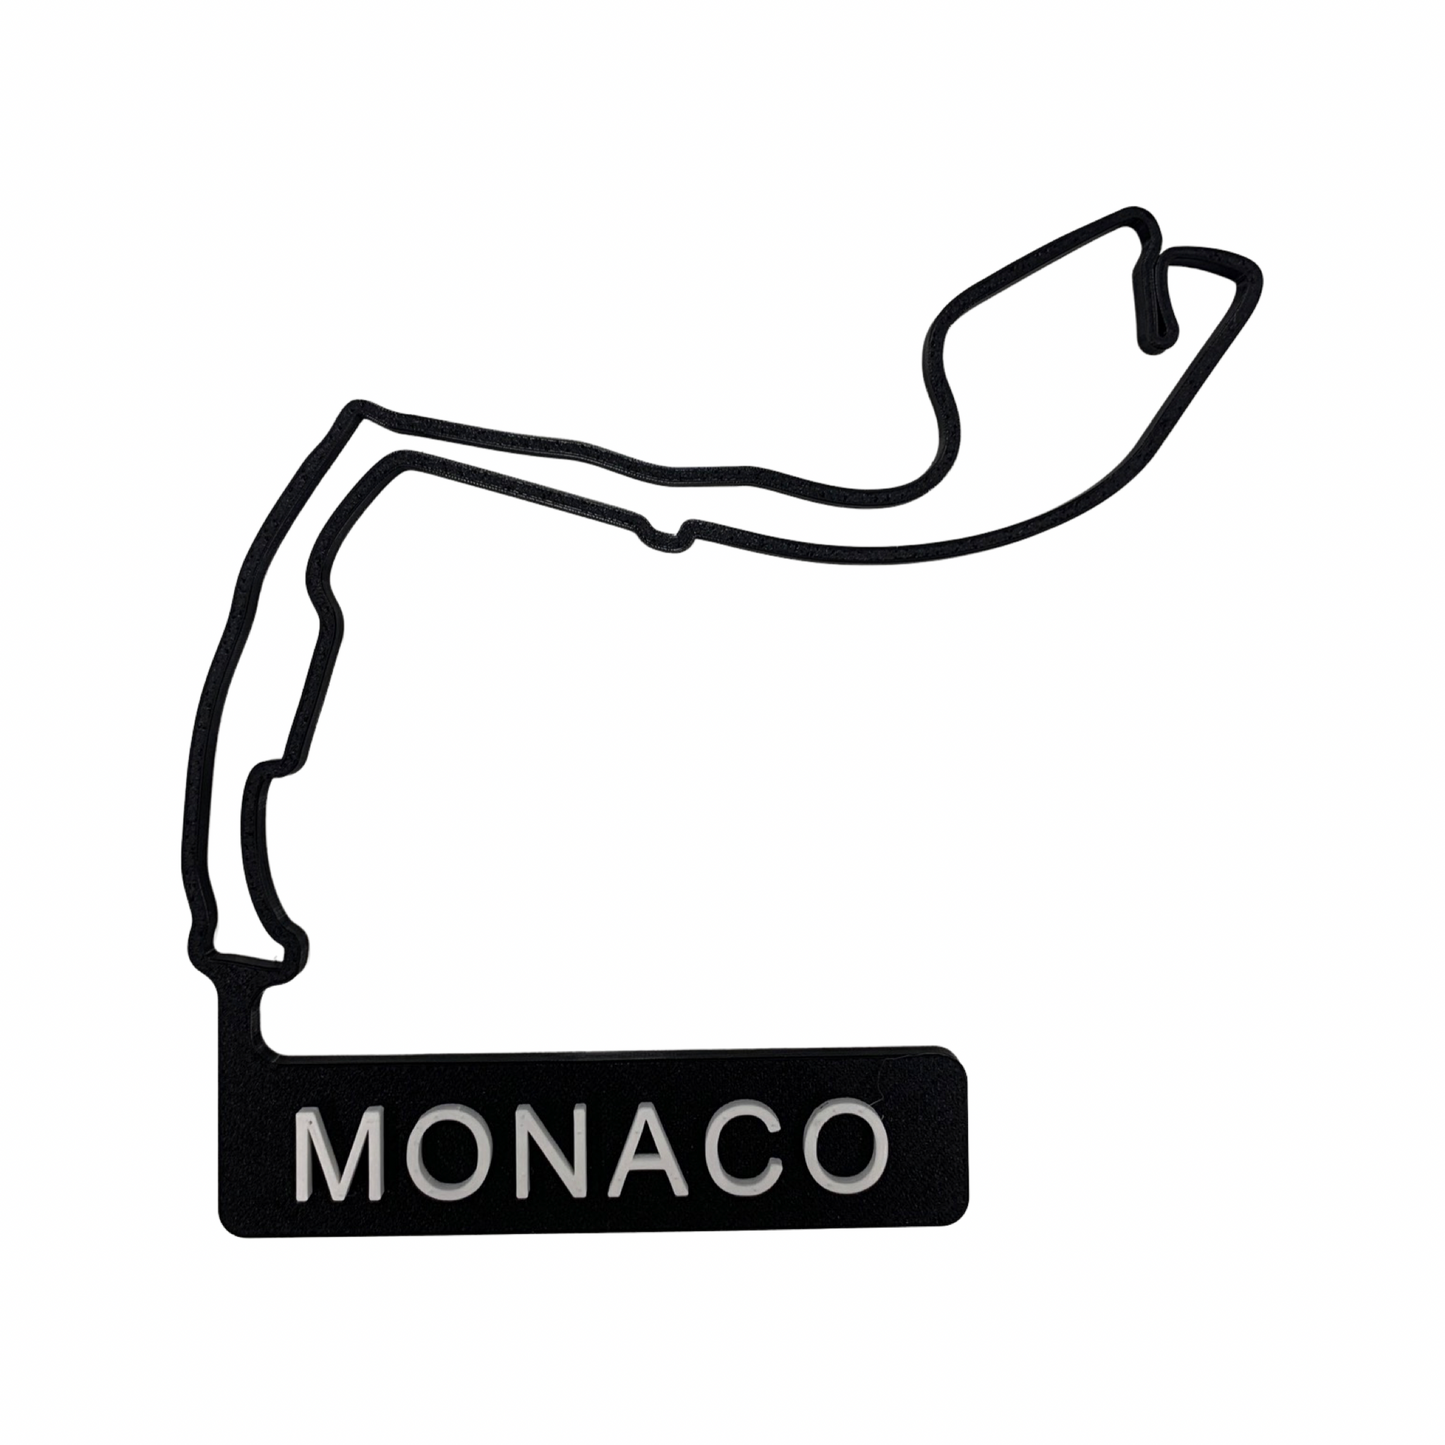 3D printed F1 tracks 2021 season - Monaco